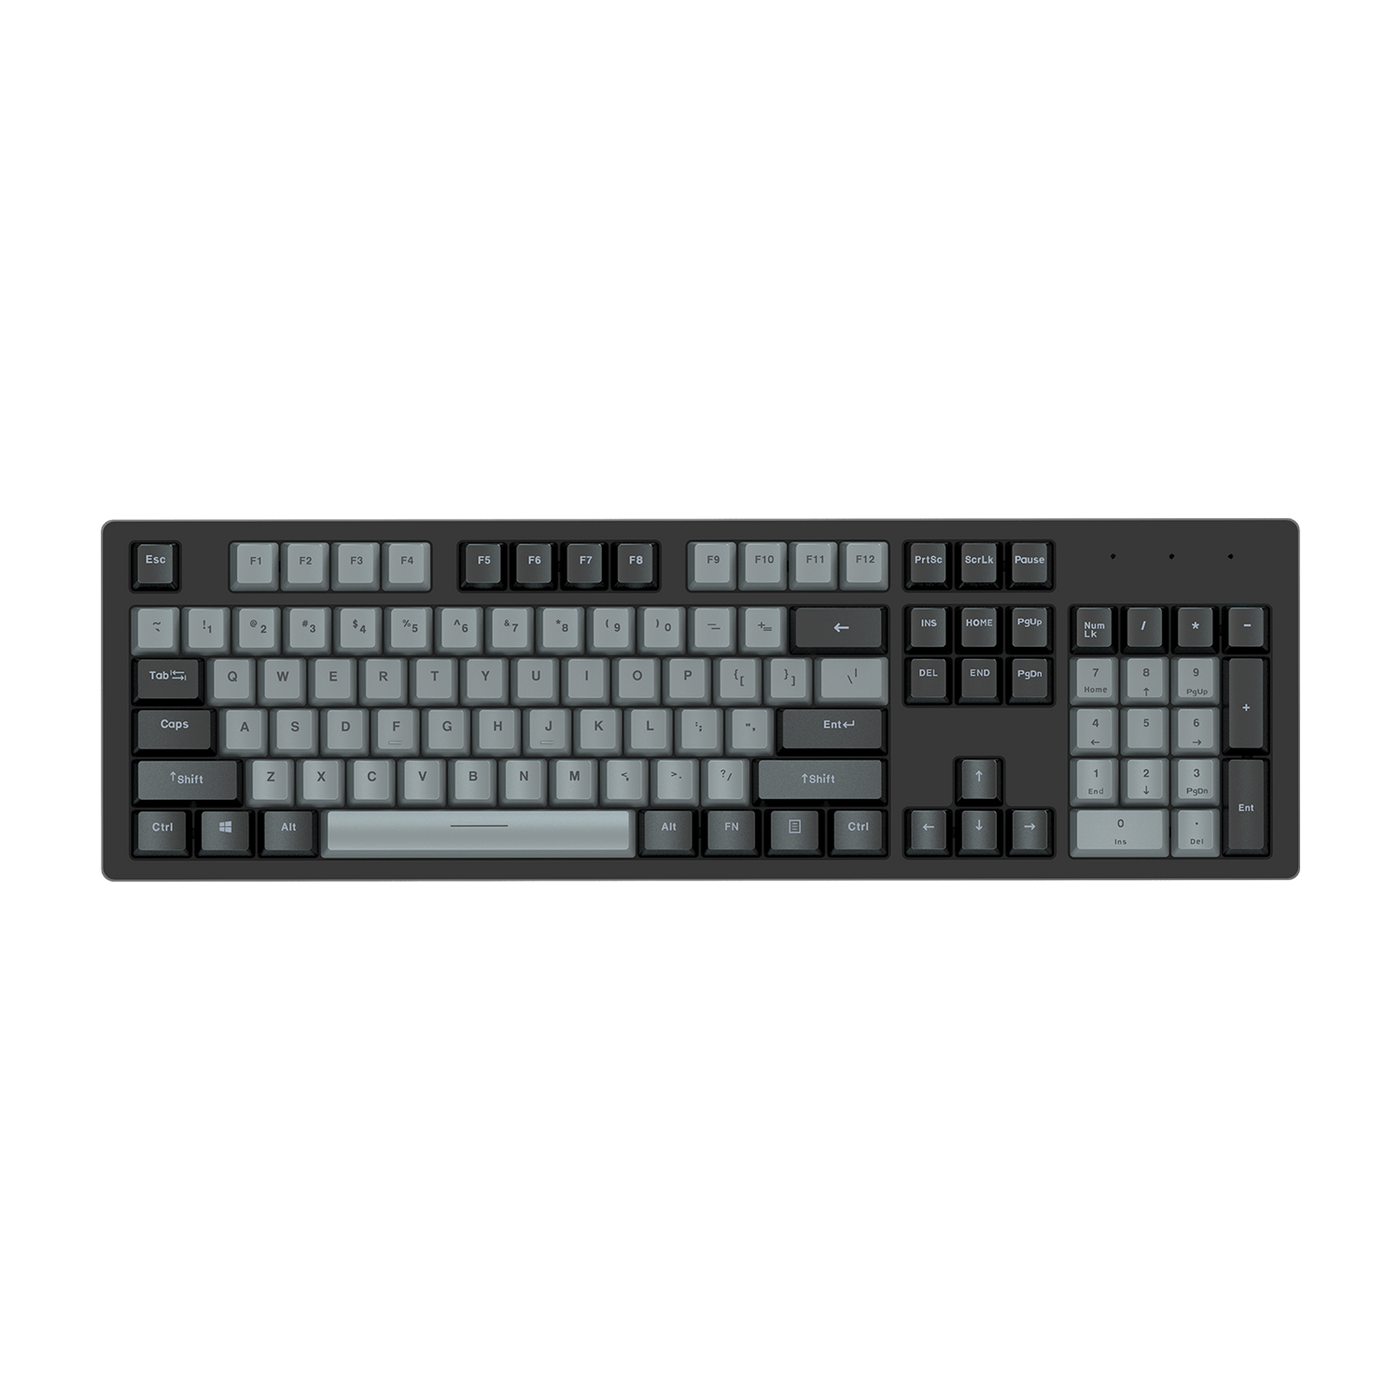 DAREU A840 Wired Mechanical Gaming Keyboard